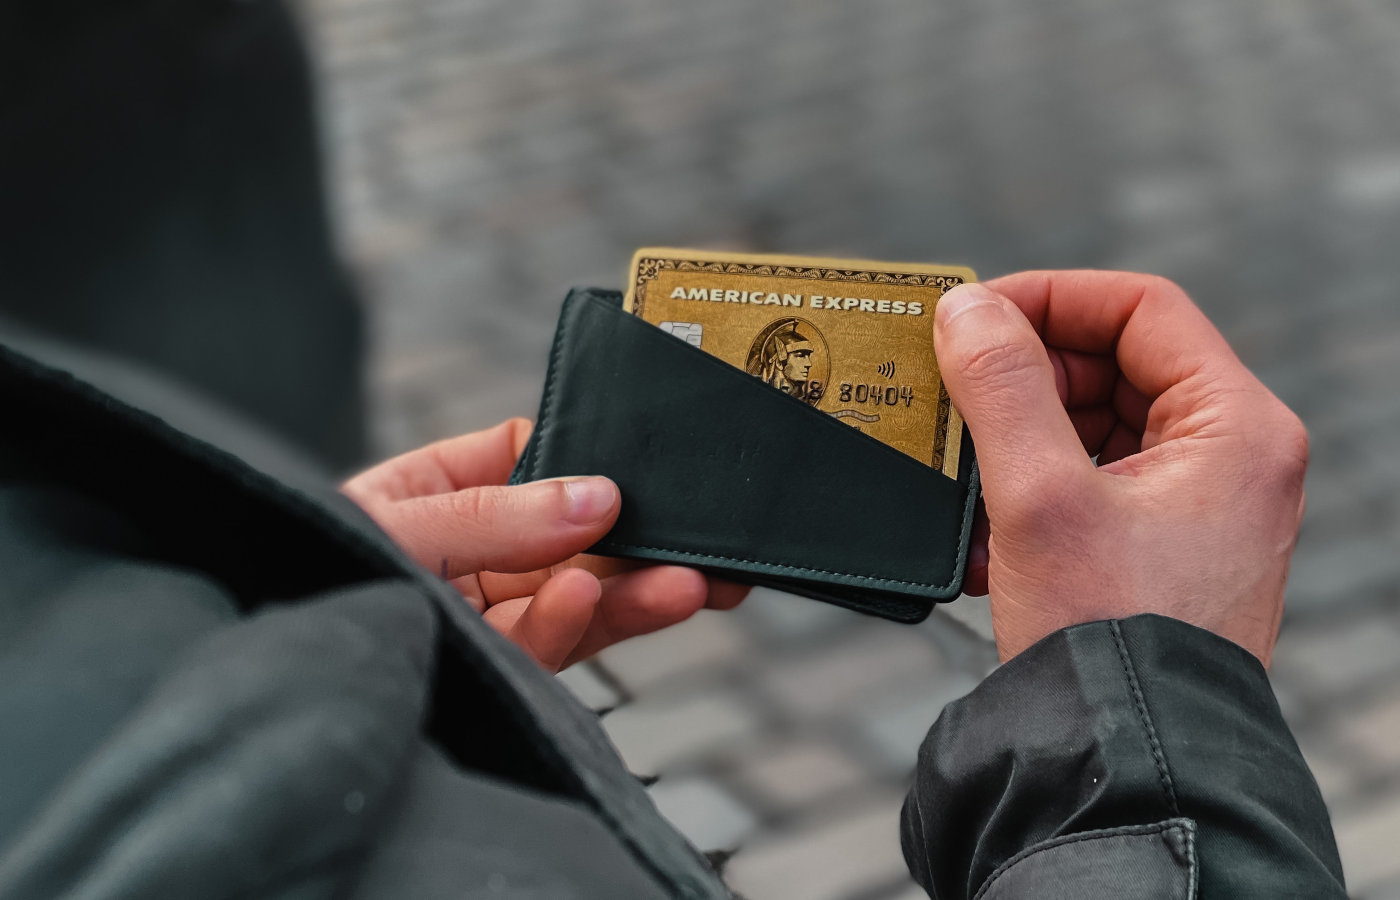 Mann hält Portemonnaie mit einer American Express Gold Card in den Händen